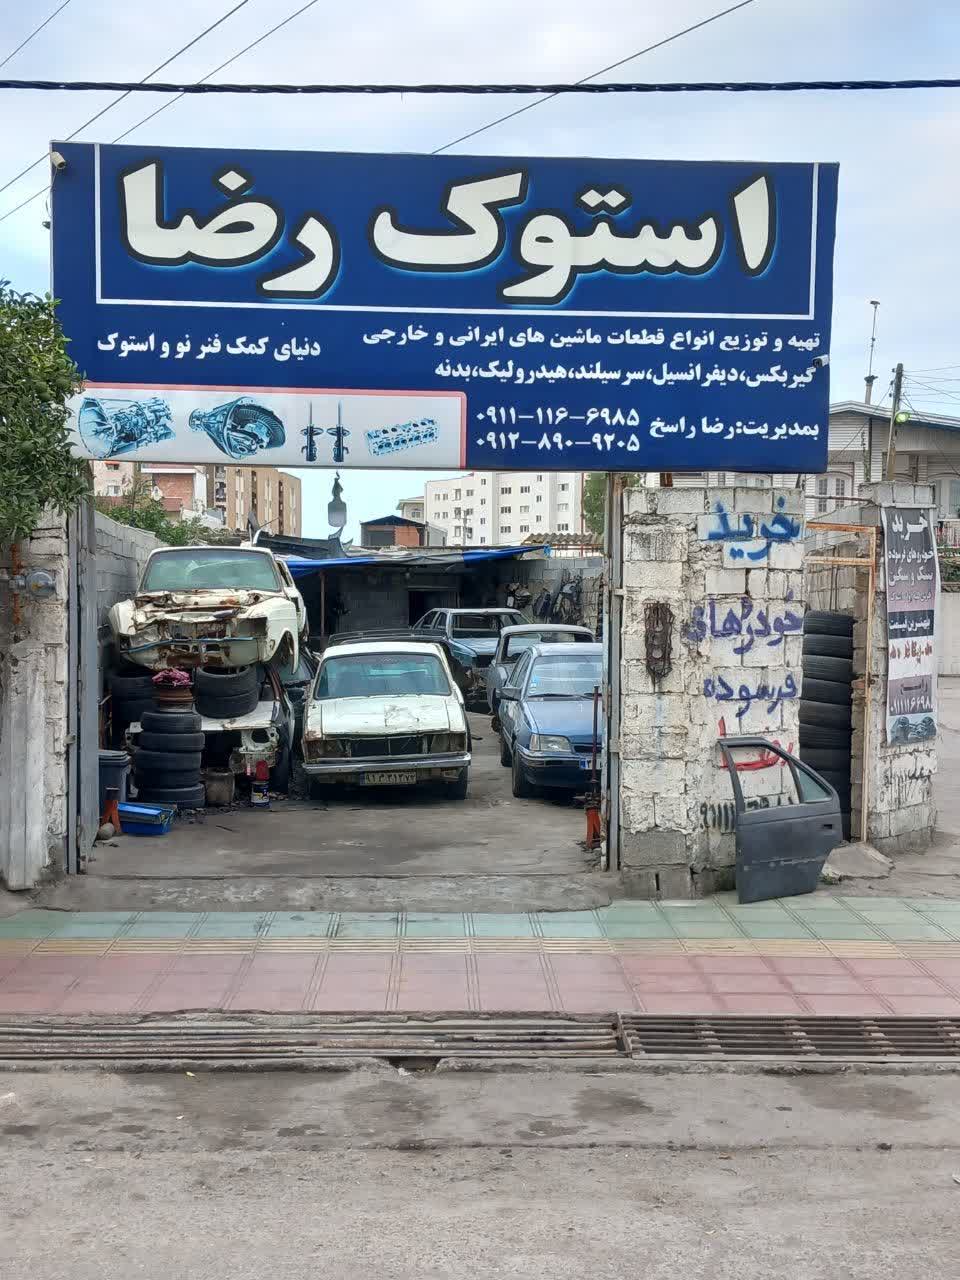 استوک فروشی رضا و خرید خودروهای فرسوده در بابل